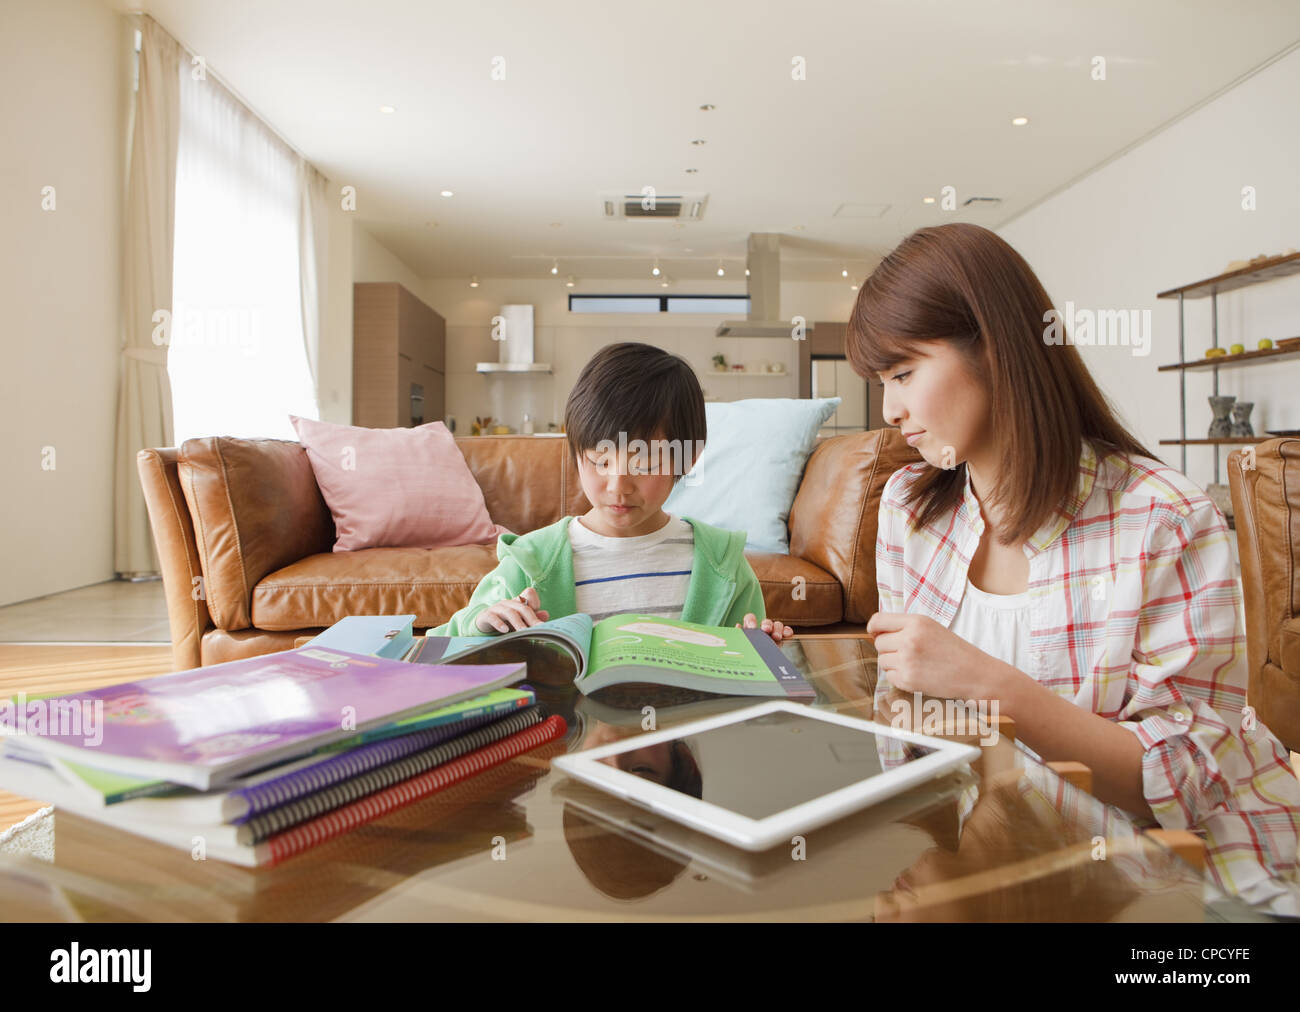 La madre e il figlio a studiare in una stanza vivente Foto Stock